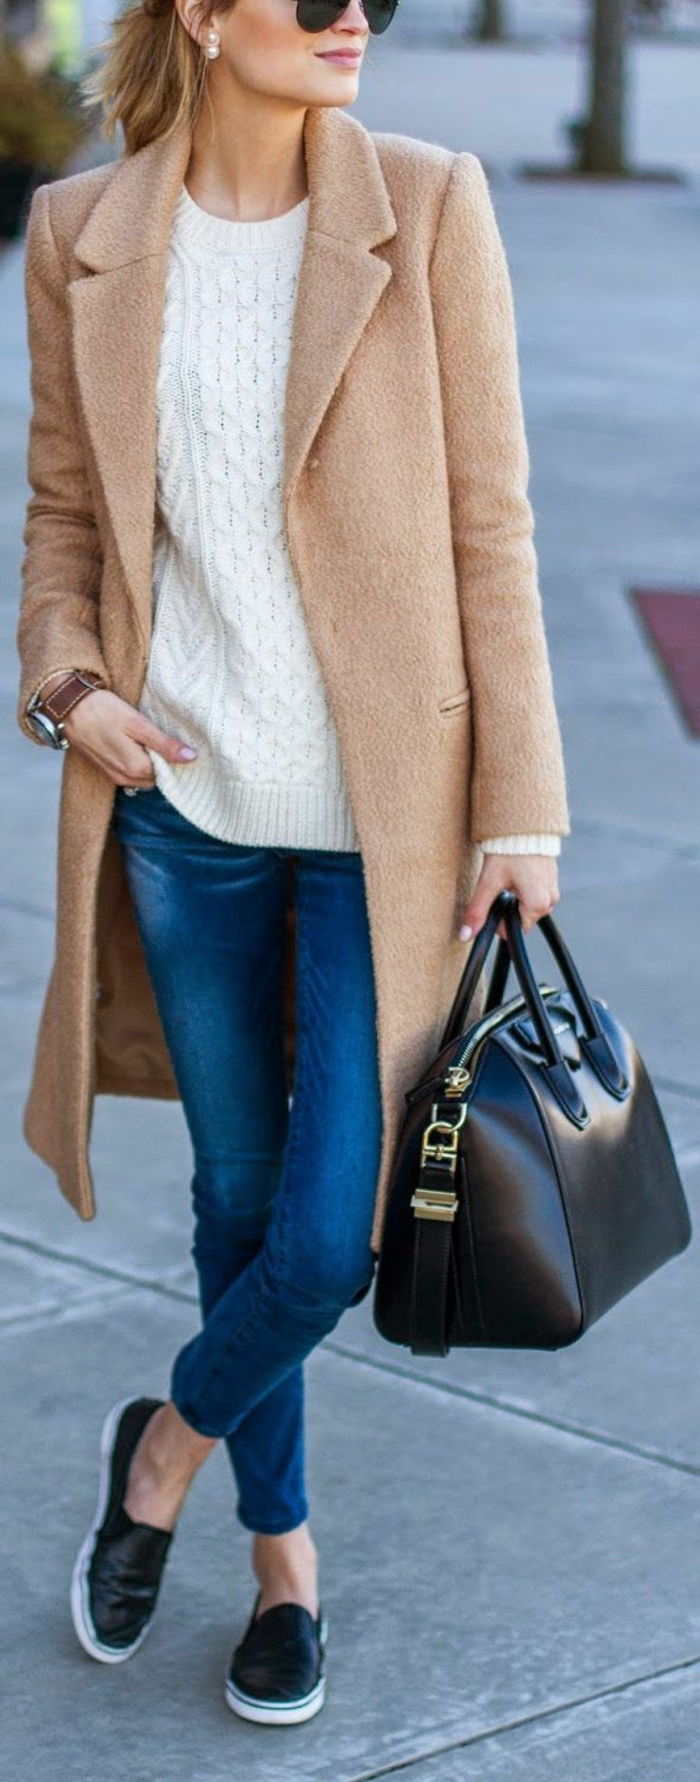 casual kleding voor vrouwen beige jas zwart leren tas bril jeans sneakers pullover